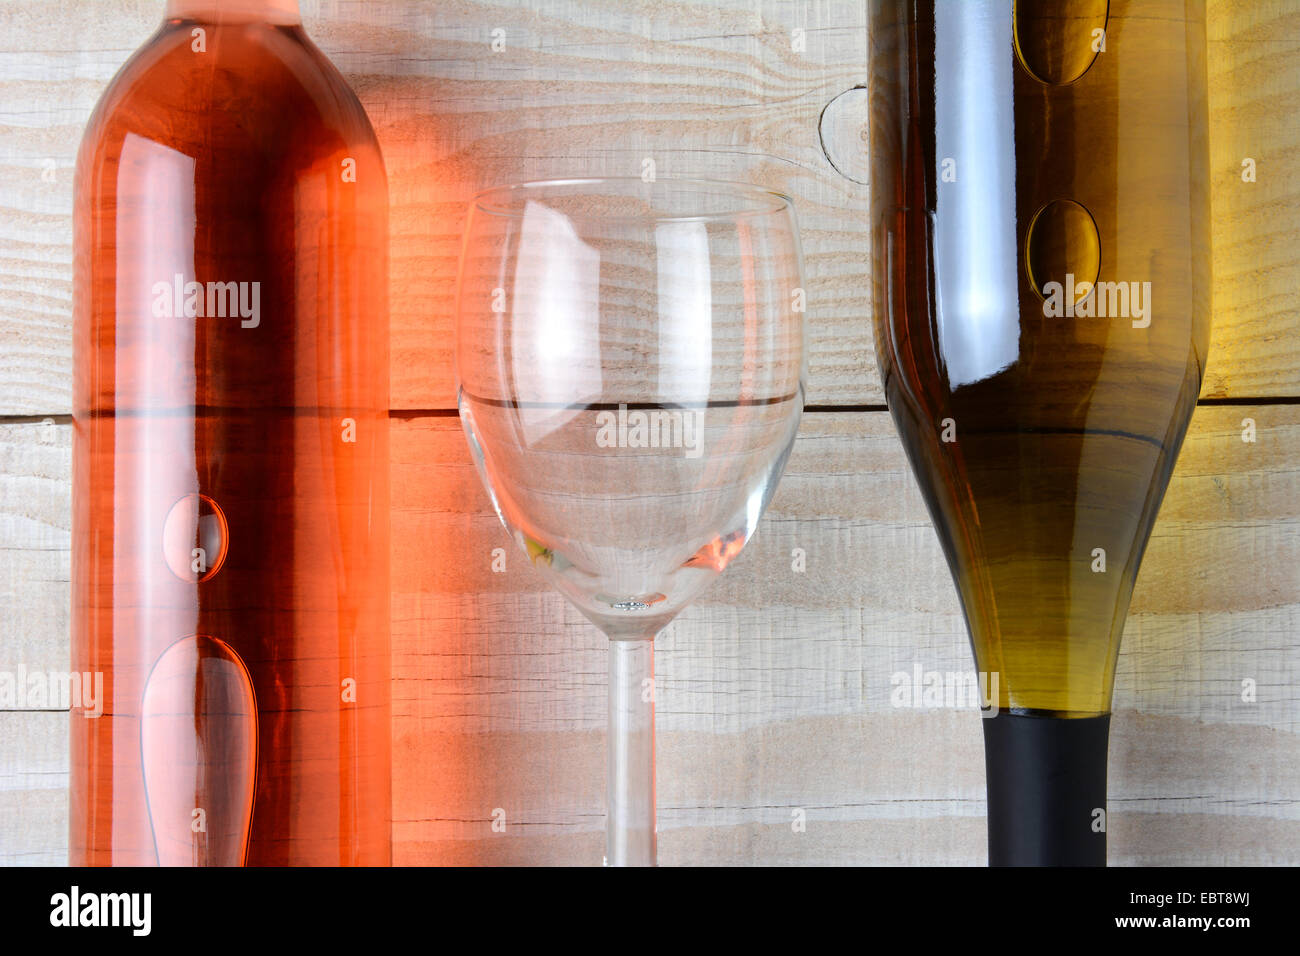 Primo piano di un bicchiere di vino tra una bottiglia di vino rosso e una bottiglia di vino bianco. Tutti e tre gli oggetti sono la posa su un bianco rustico Foto Stock